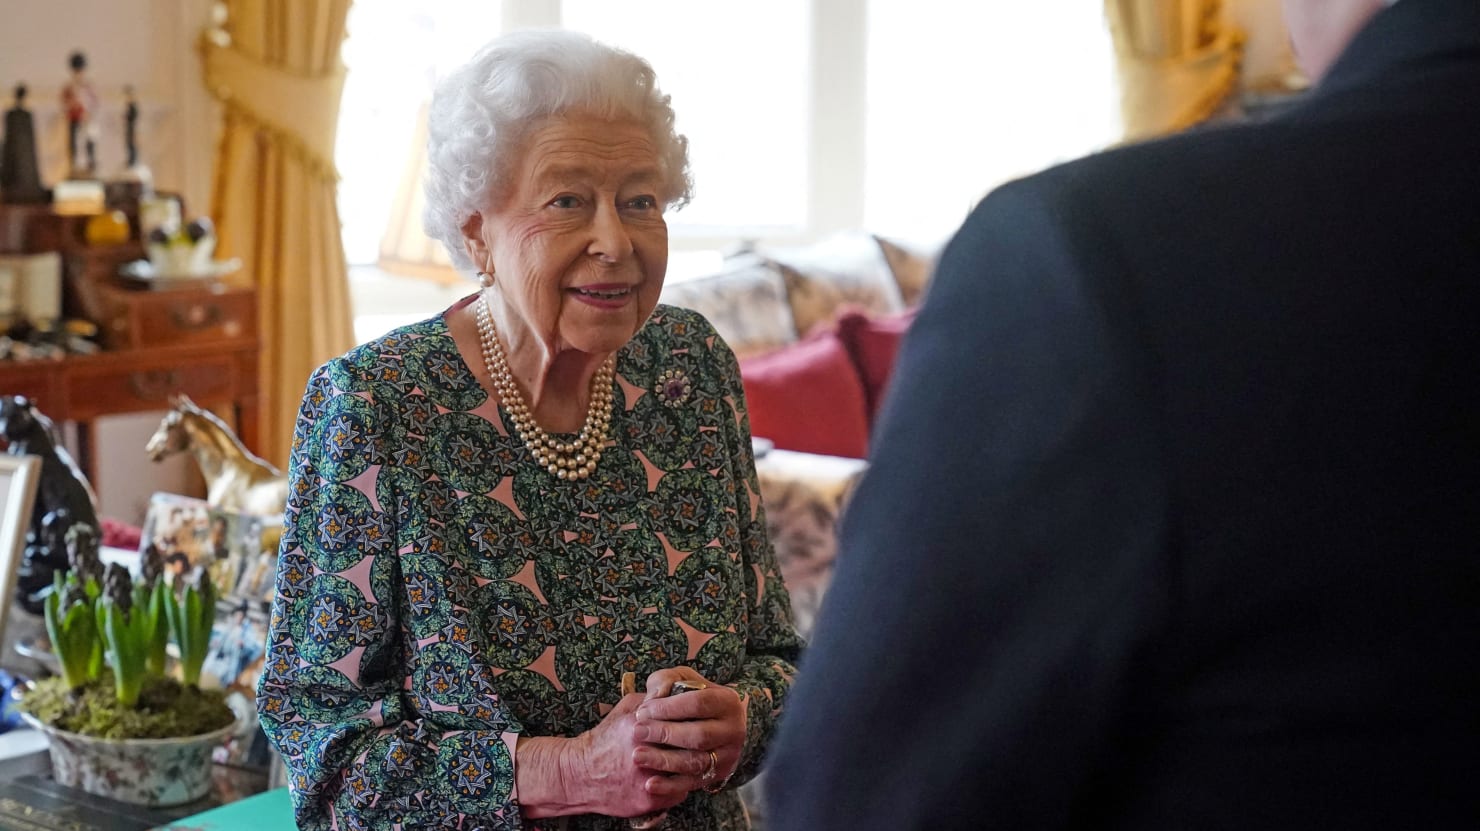 Nuevas preguntas sobre la salud mientras la Reina Isabel dice a los visitantes: “No puedo moverme”.